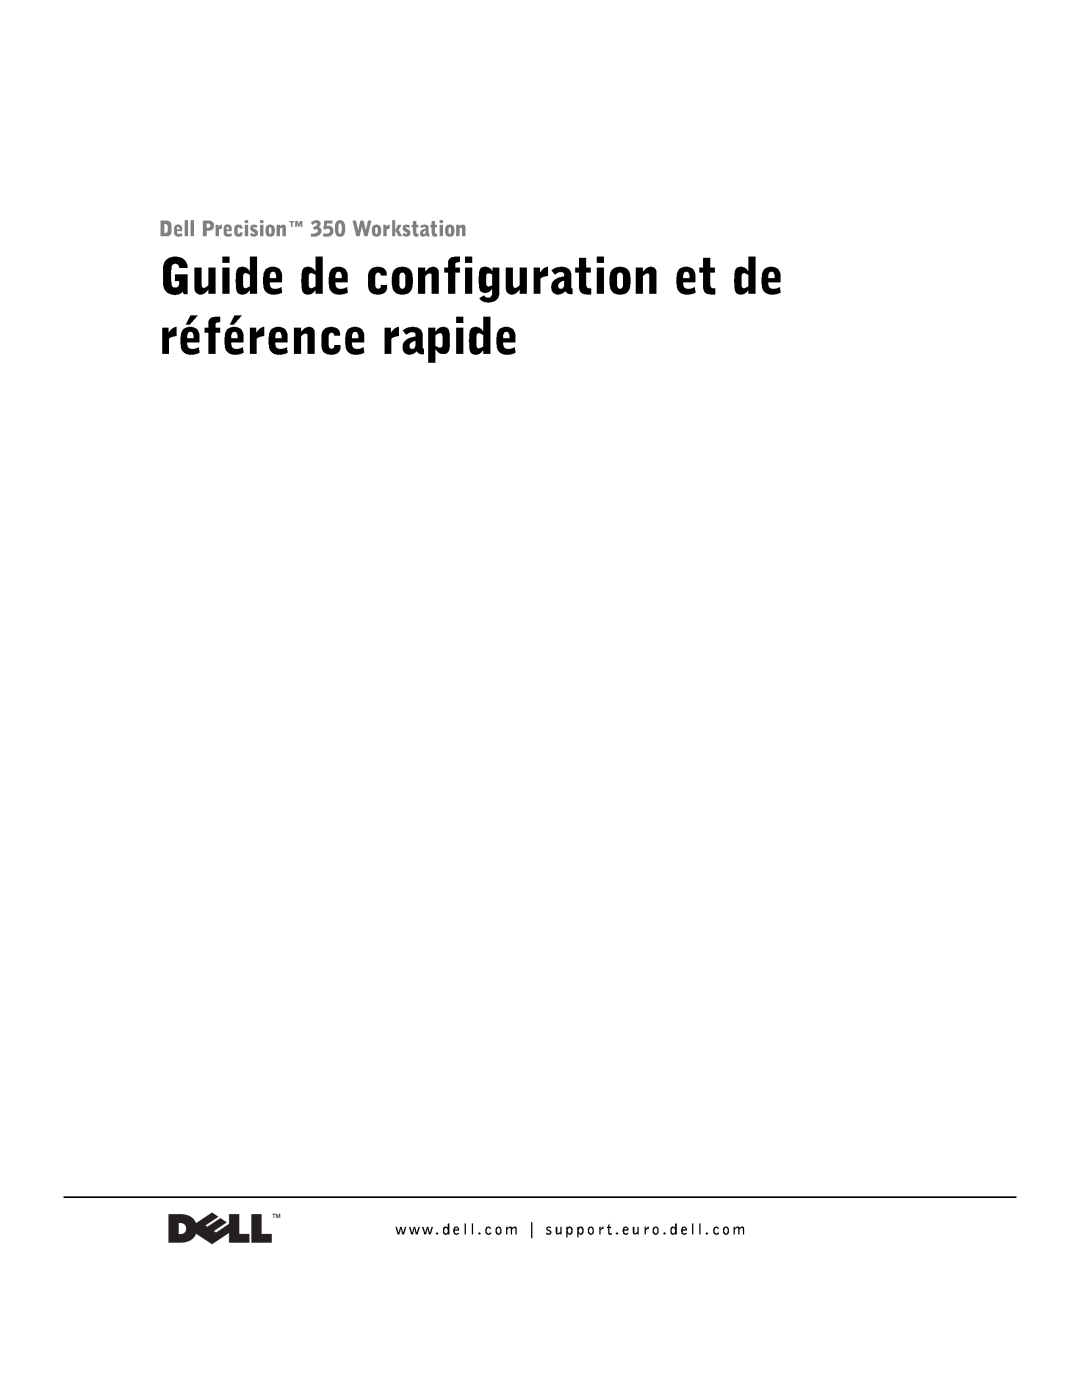 Dell 9T217 manual Guide de configuration et de référence rapide, Dell Precision 350 Workstation 